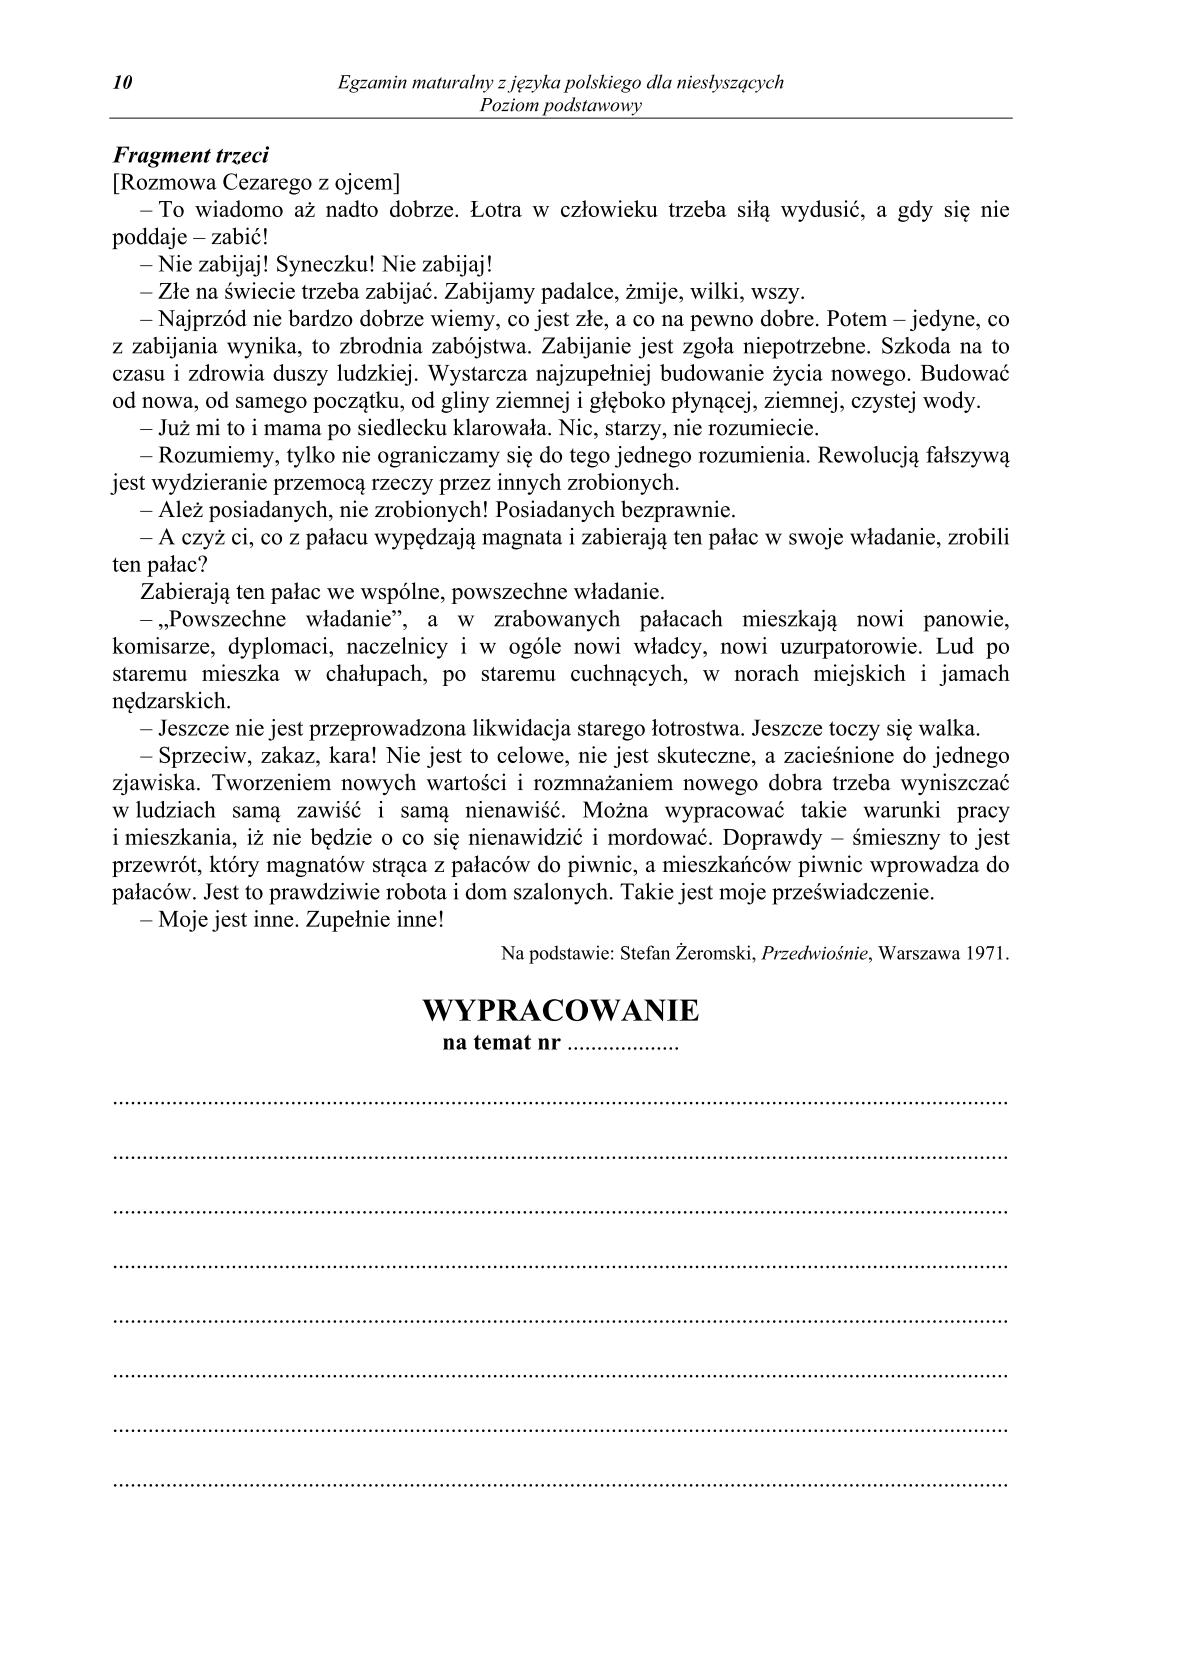 pytania-jezyk-polski-dla-osob-nieslyszacych-matura-2014-str.10